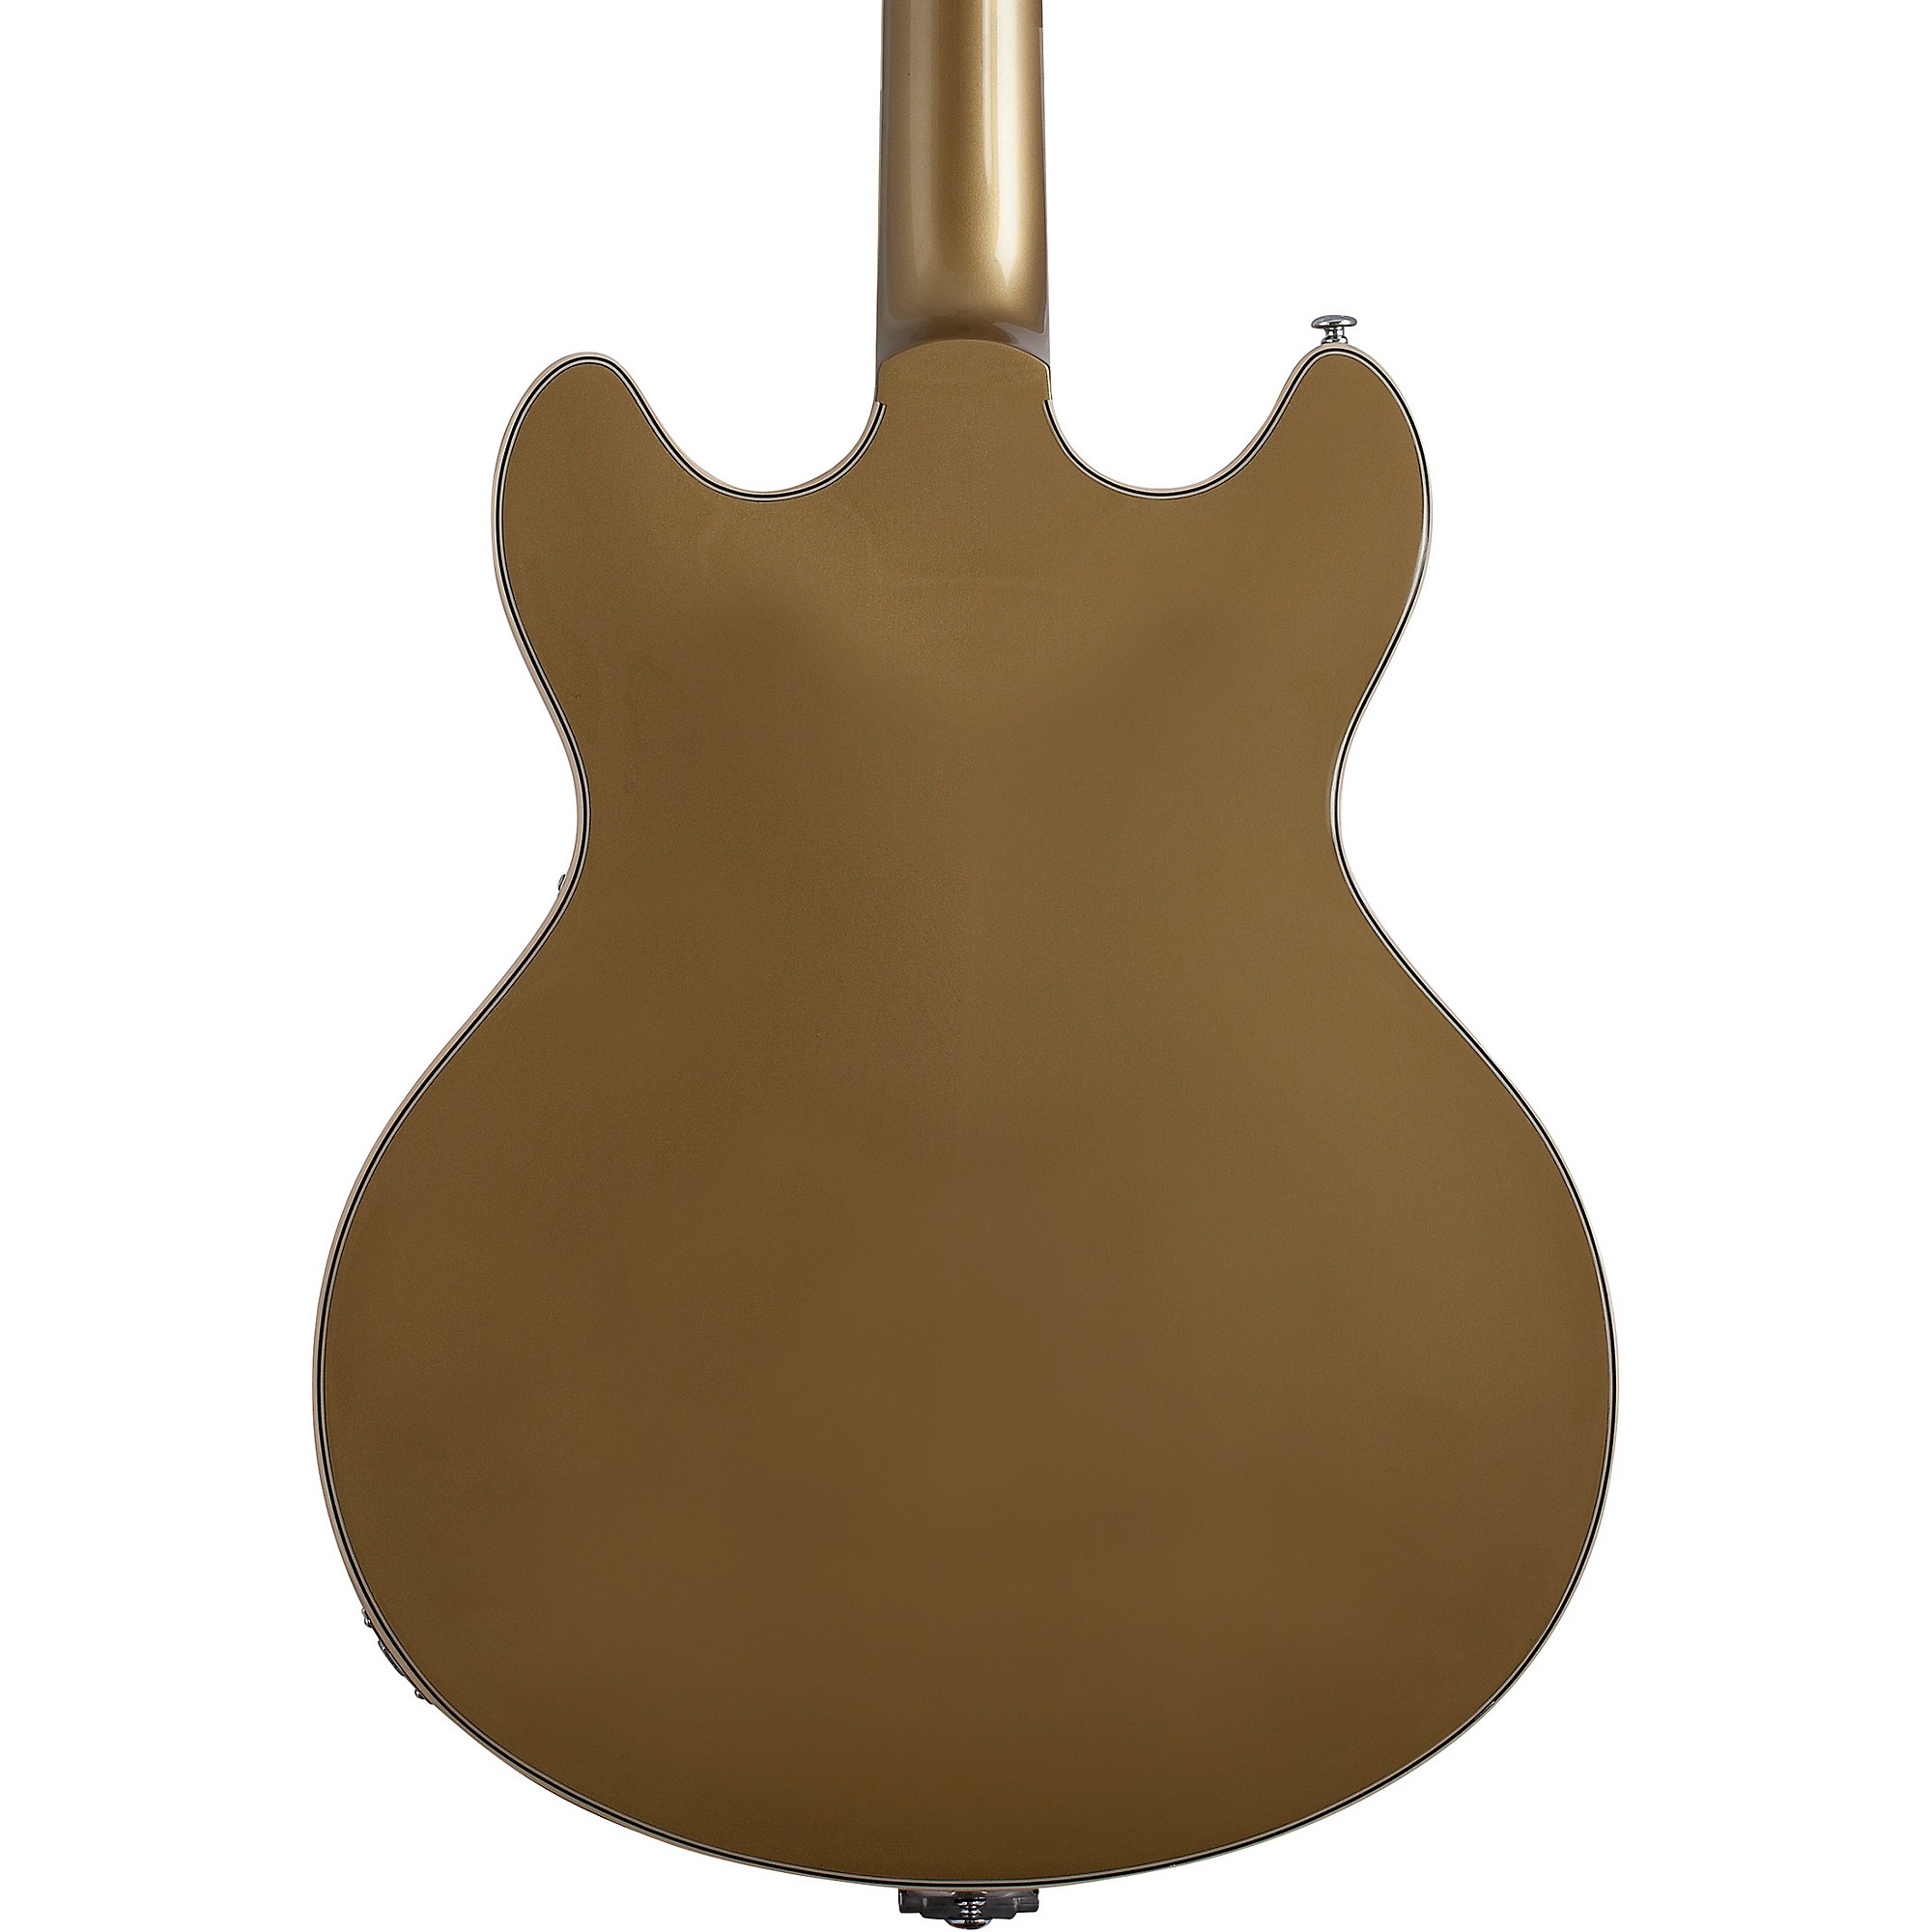 цена Schecter Guitar Research Corsair Полуполая электрогитара с золотым верхом